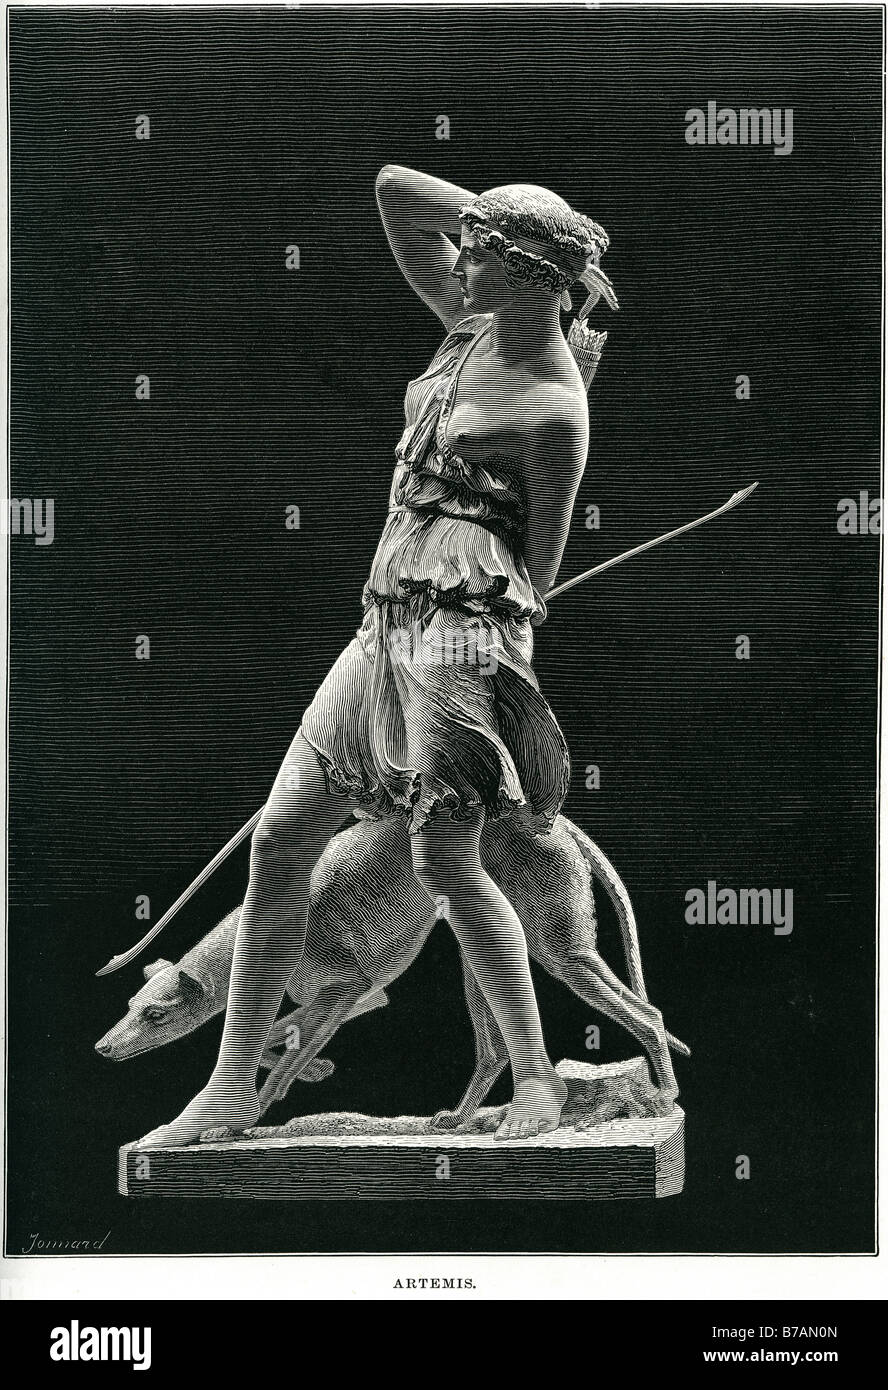 Artemis estatua hombre perro cazador hunt lanza piedras permanente (Sir William) Hamo Thornycroft RA (9 de marzo de 1850-18 de diciembre de 1925) Foto de stock